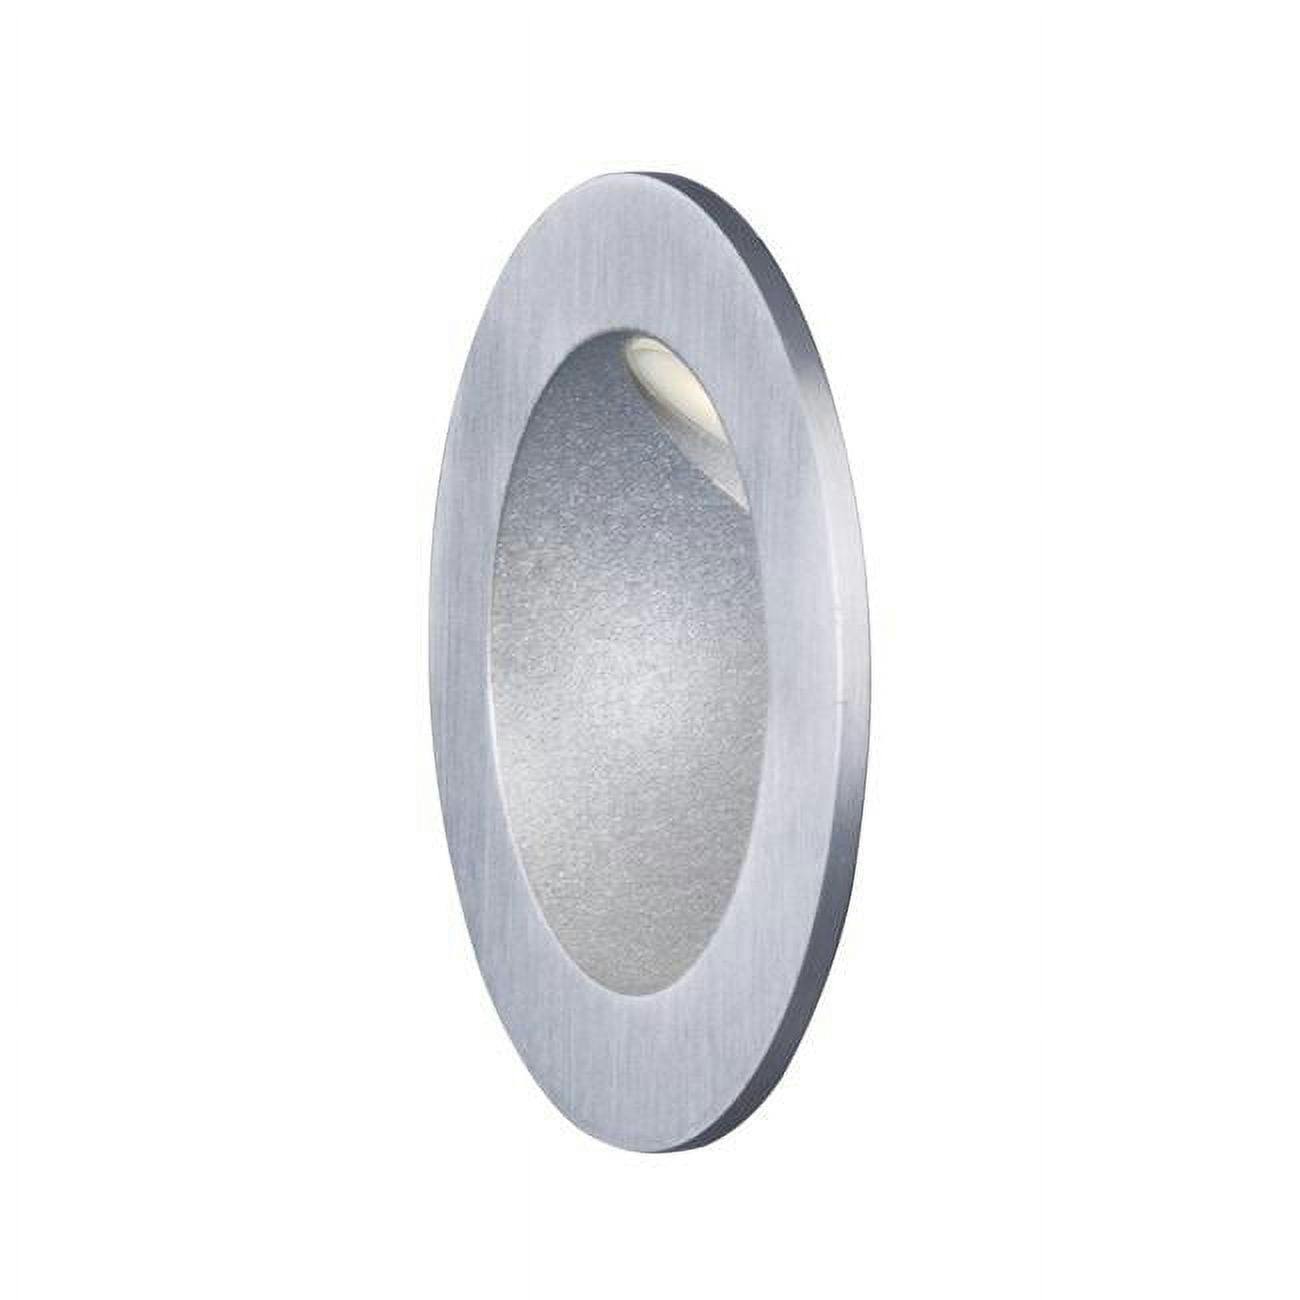 Alumilux Circular Satin Aluminum LED Outdoor Wall Sconce